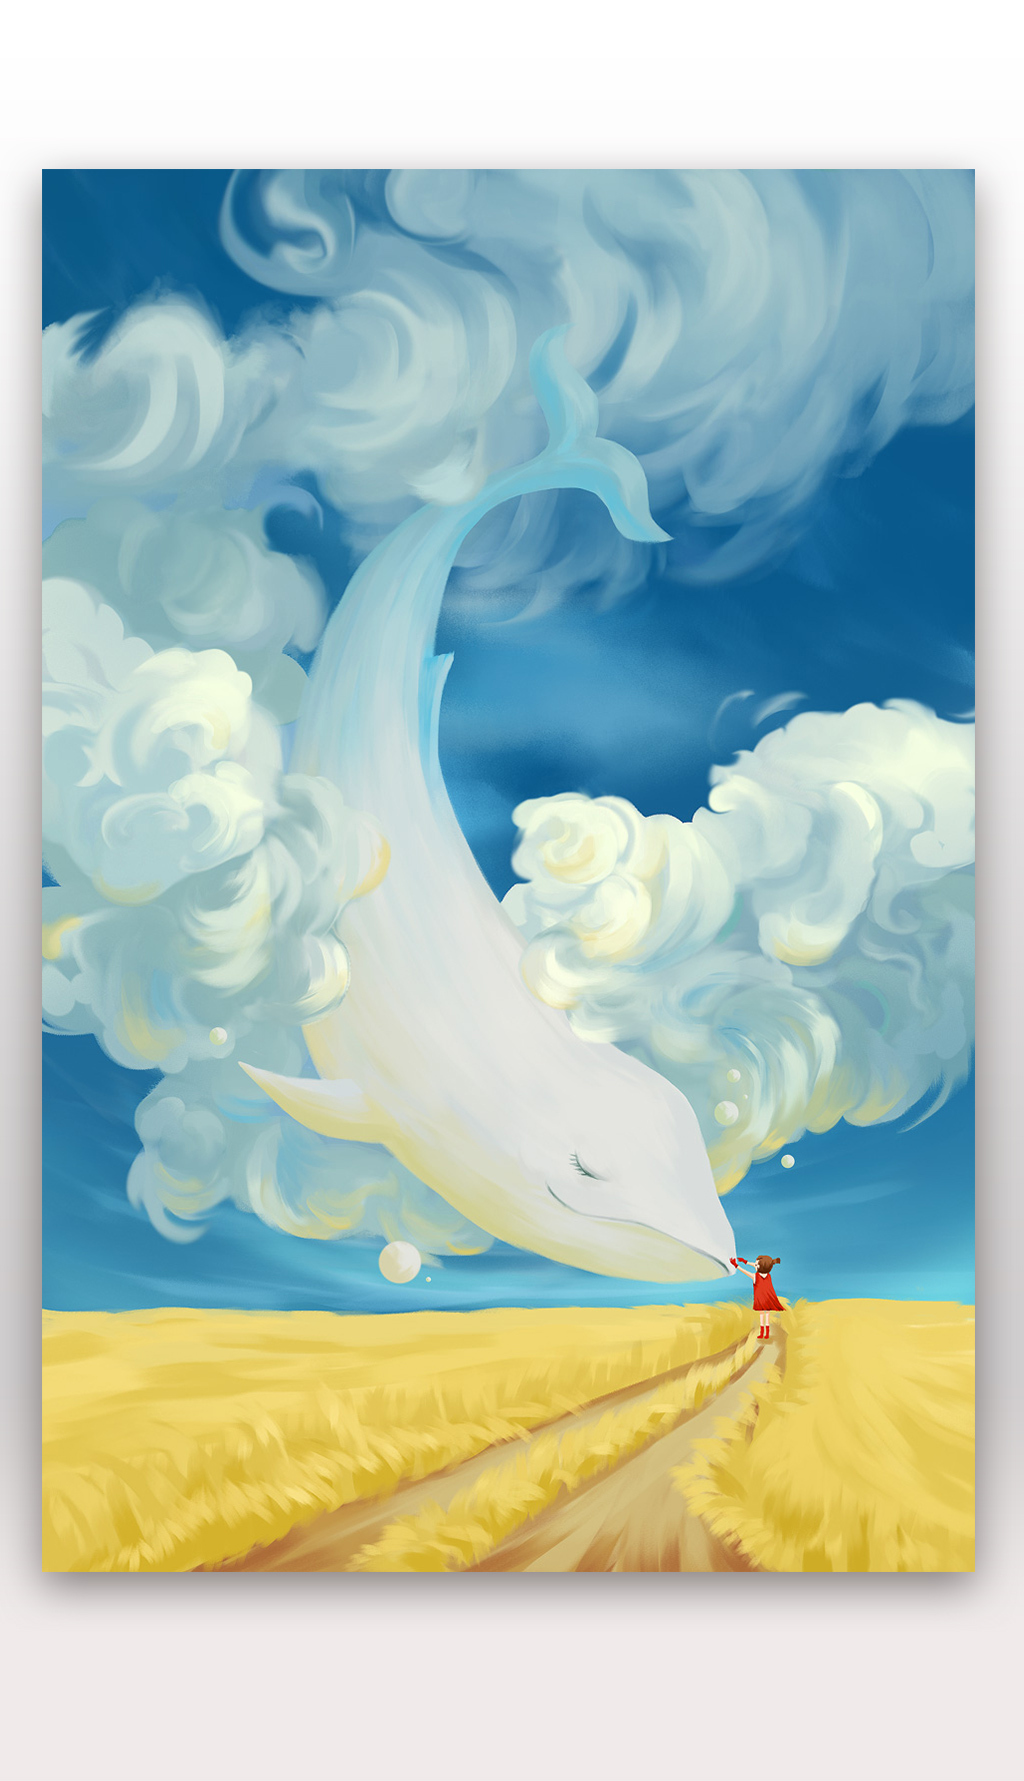 唯美鲸鱼手绘手机壁纸星空插图插画PSD设计